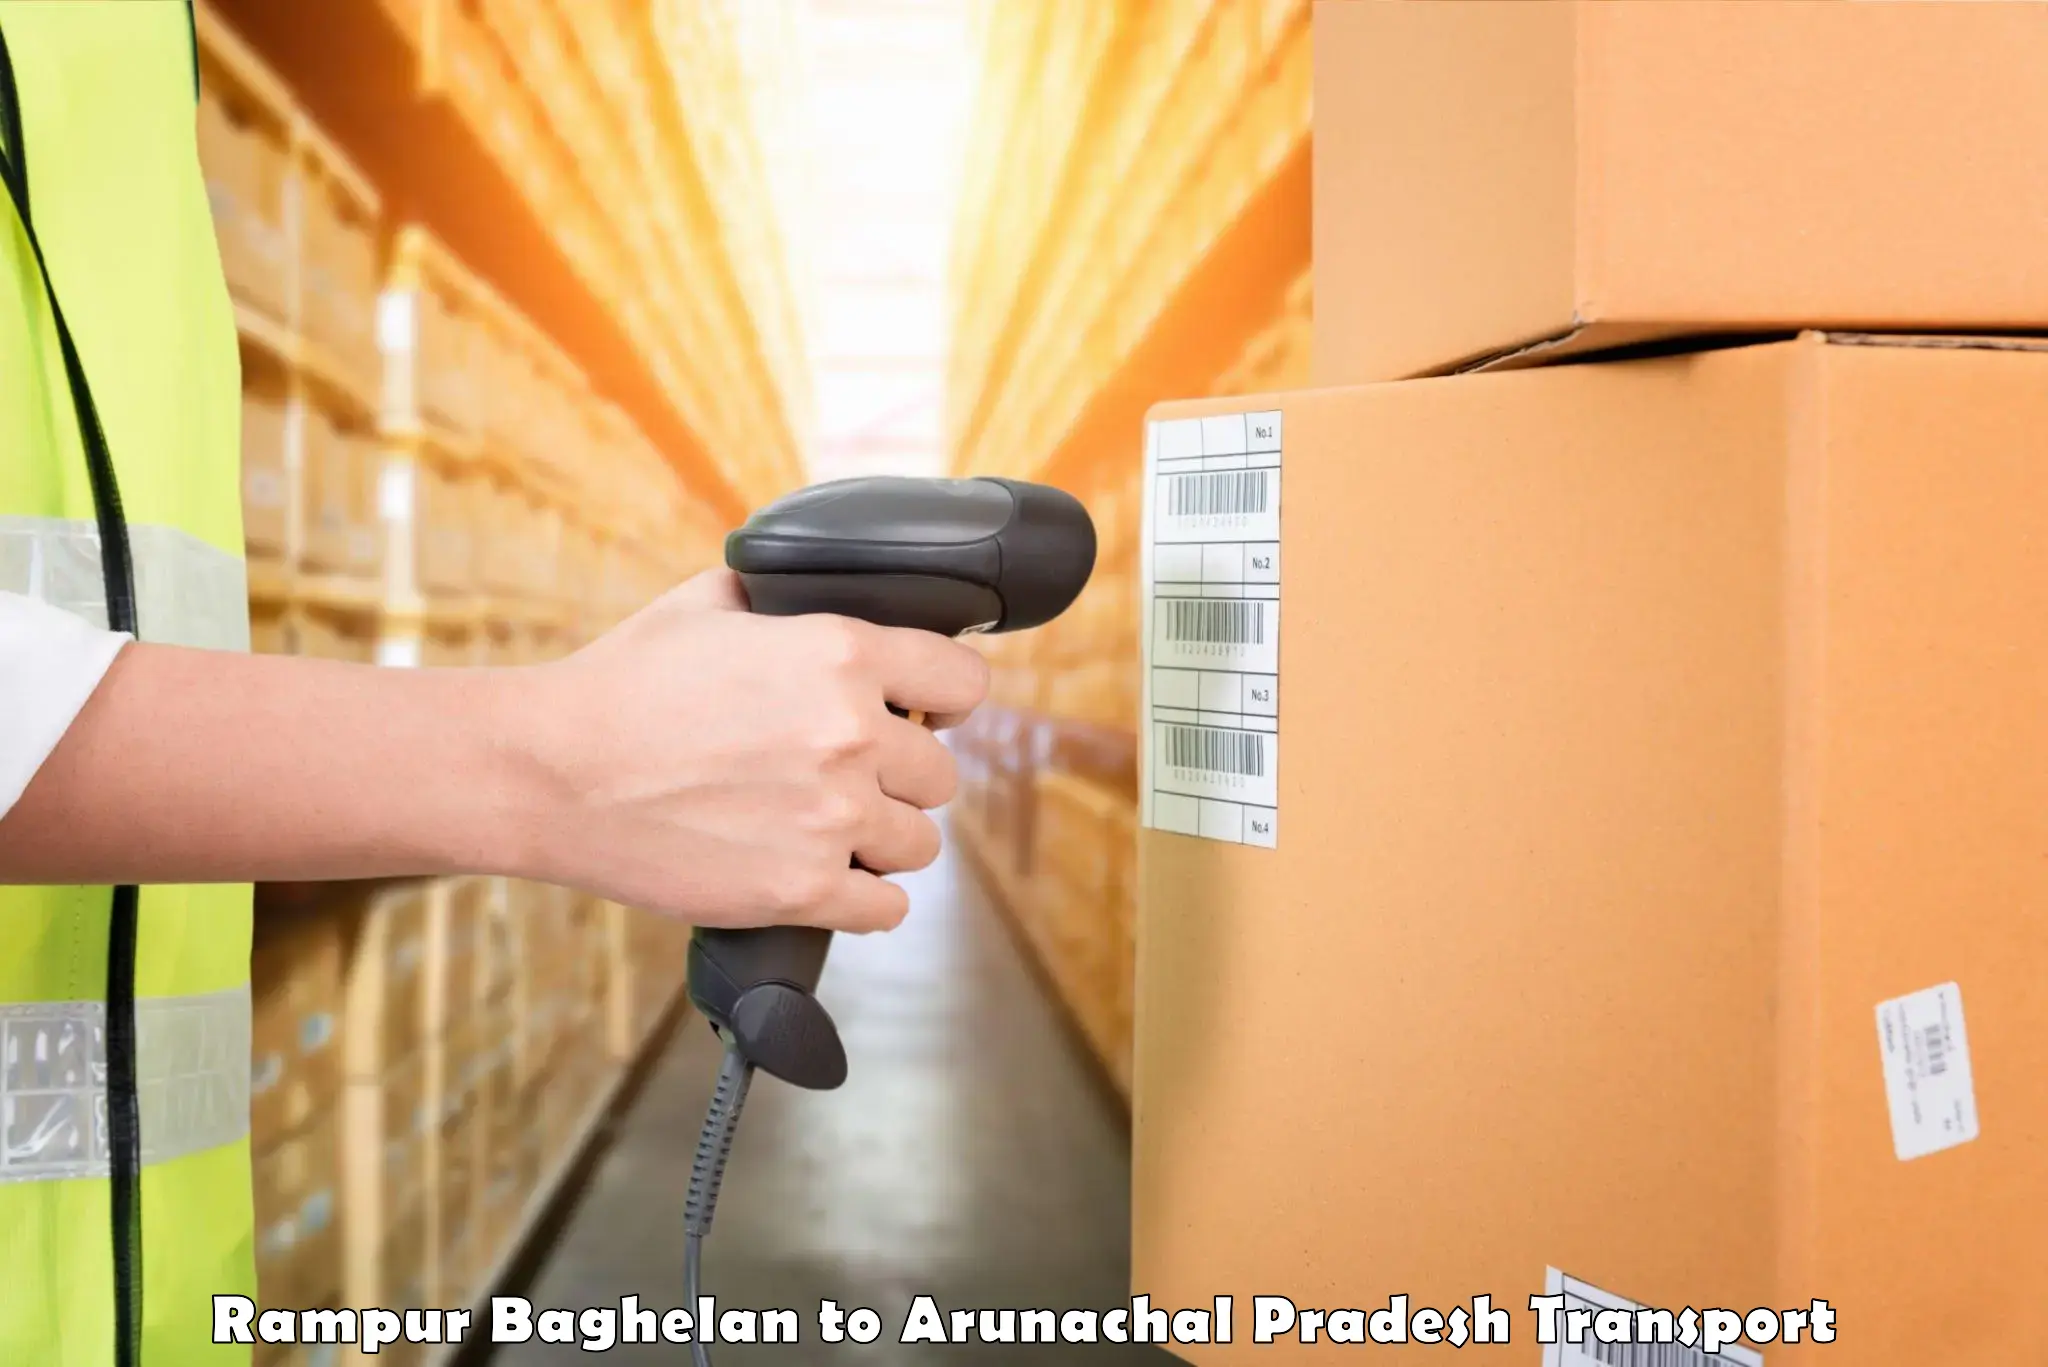 Container transport service Rampur Baghelan to Lower Subansiri